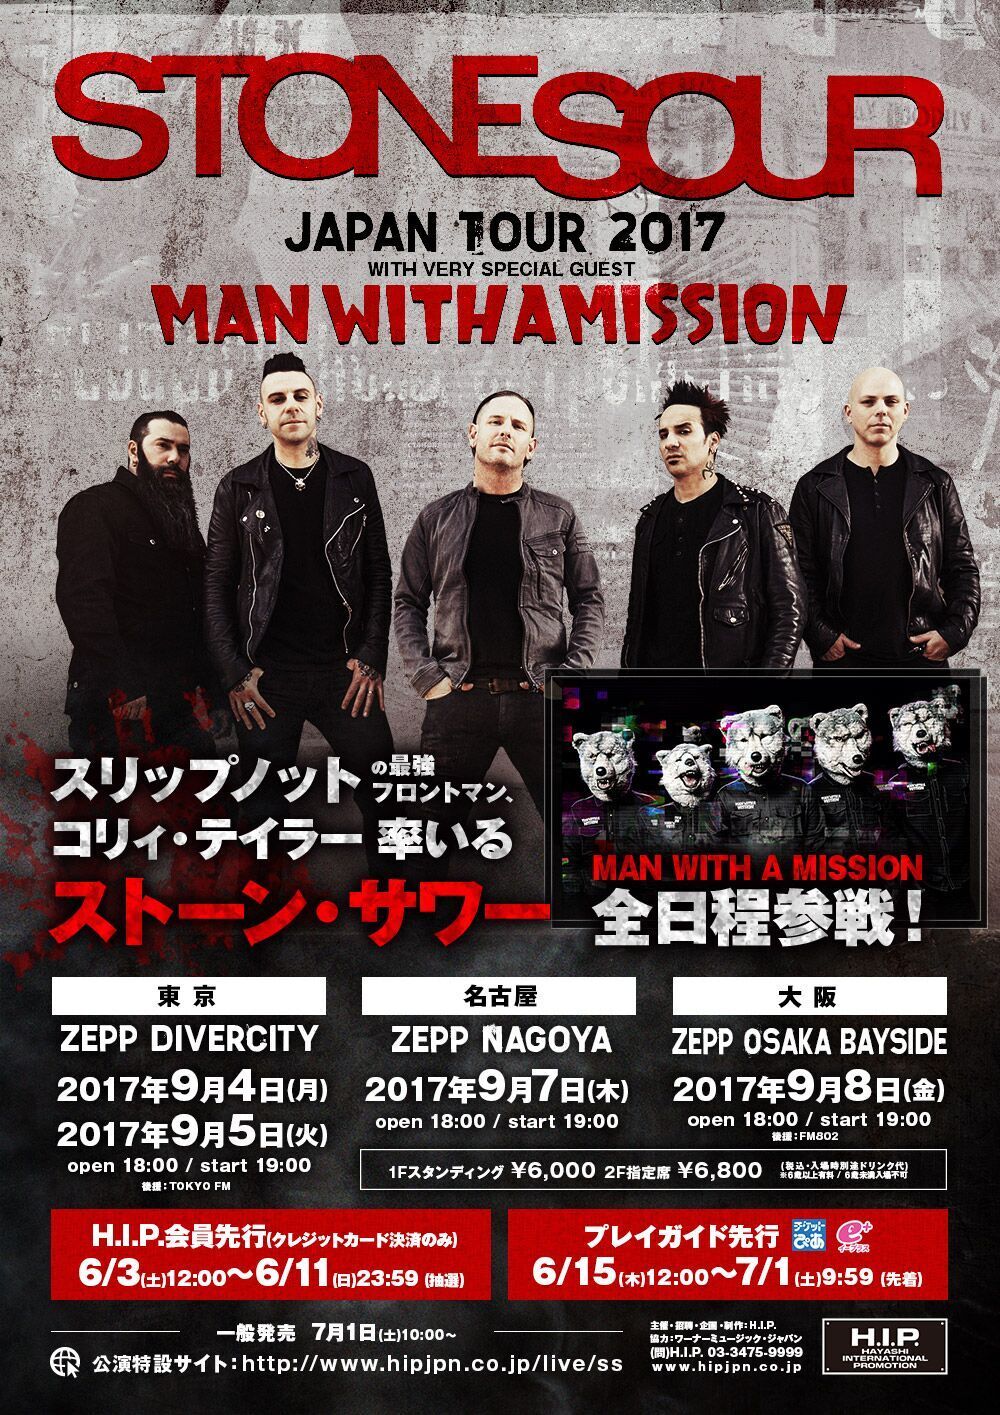 tone Sour Japan Tour 2017